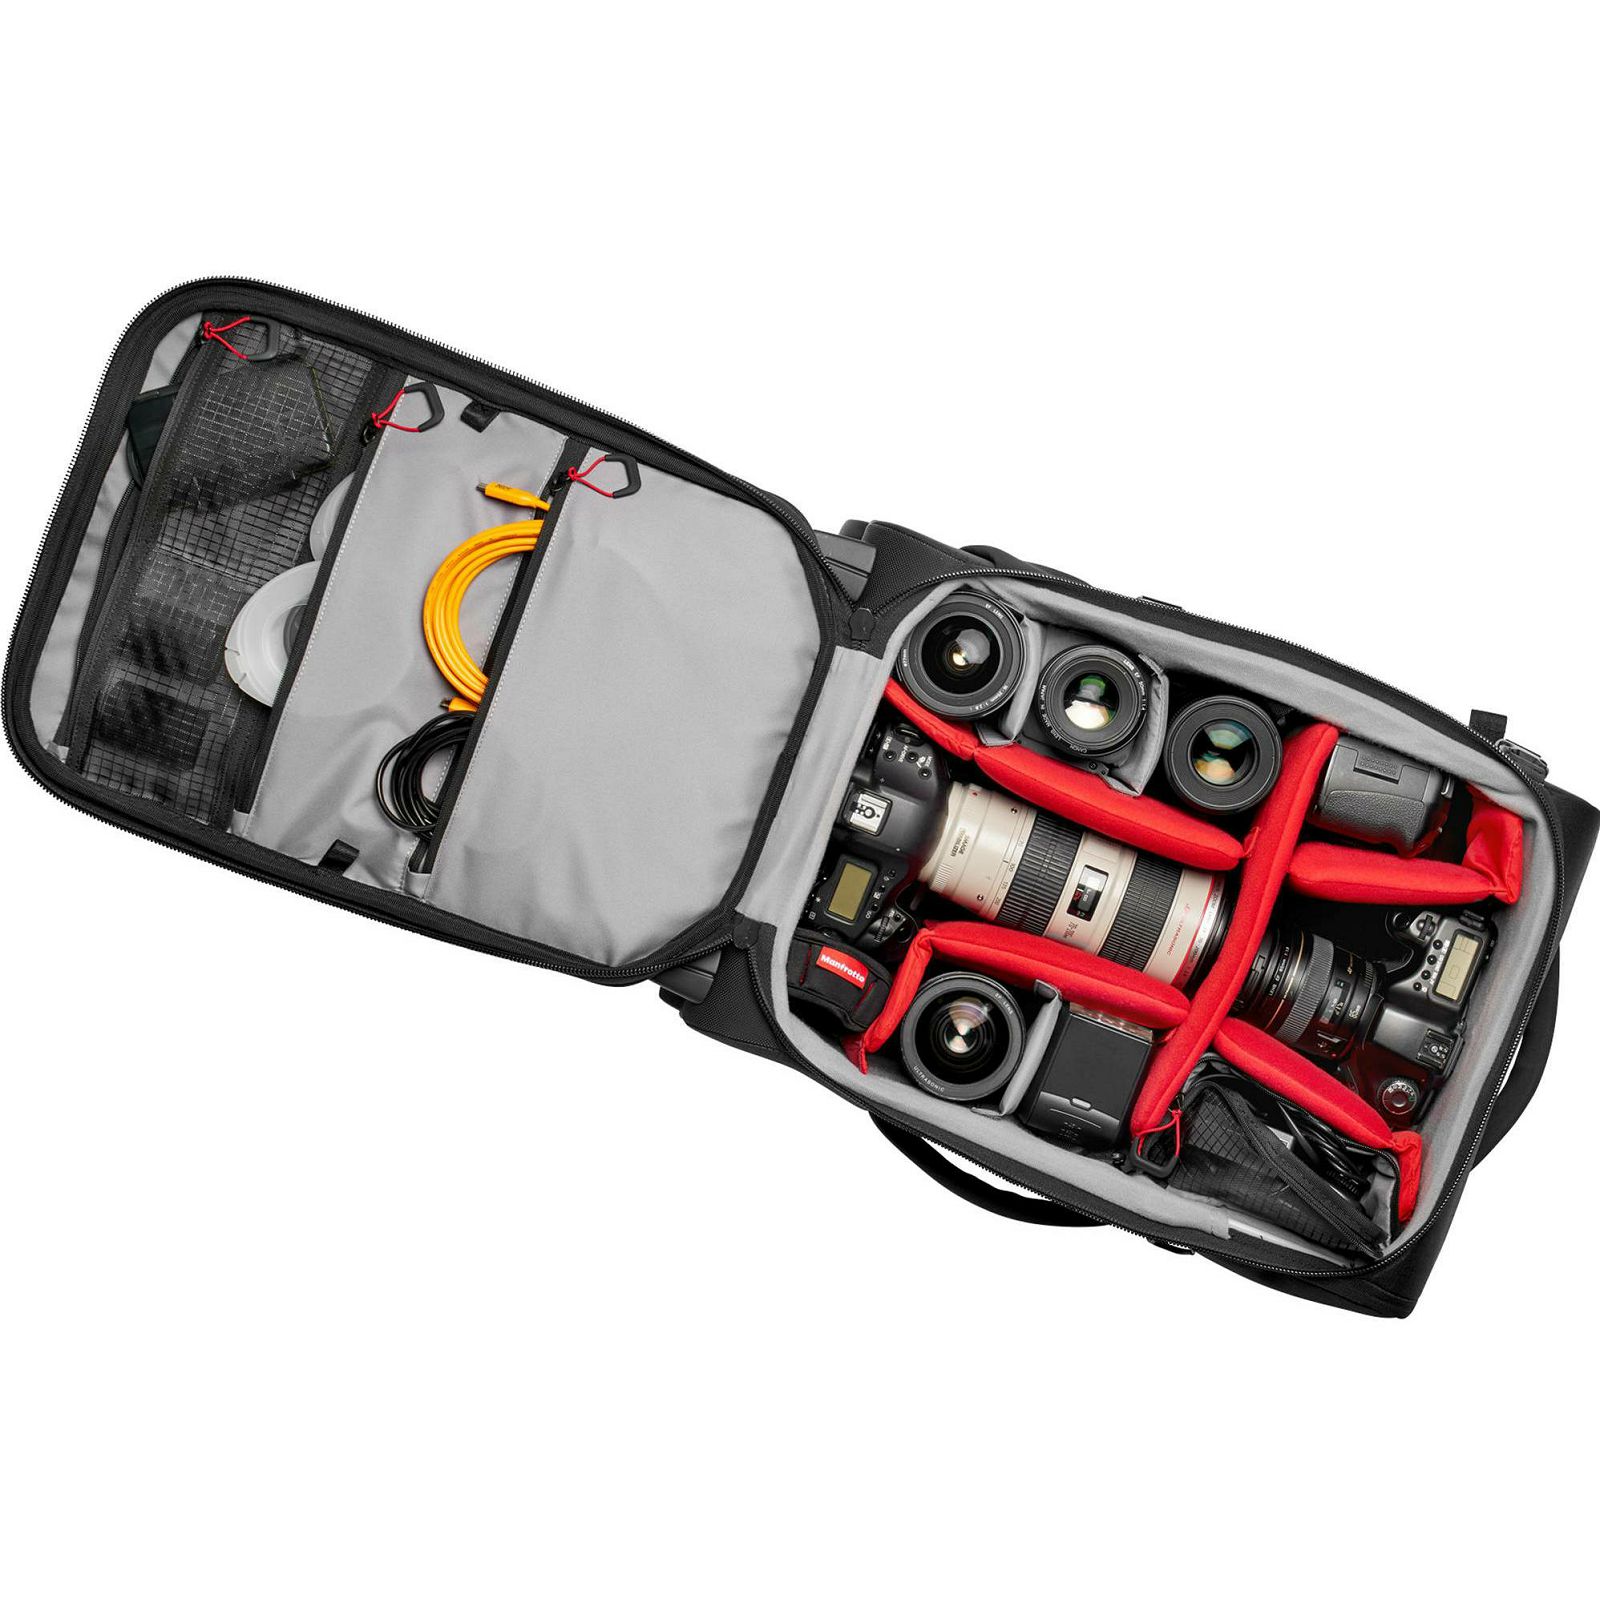 Manfrotto Pro Light Reloader Air-55 PL Carry-On Camera Roller Bag Black kufer za foto opremu (MB PL-RL-A55)